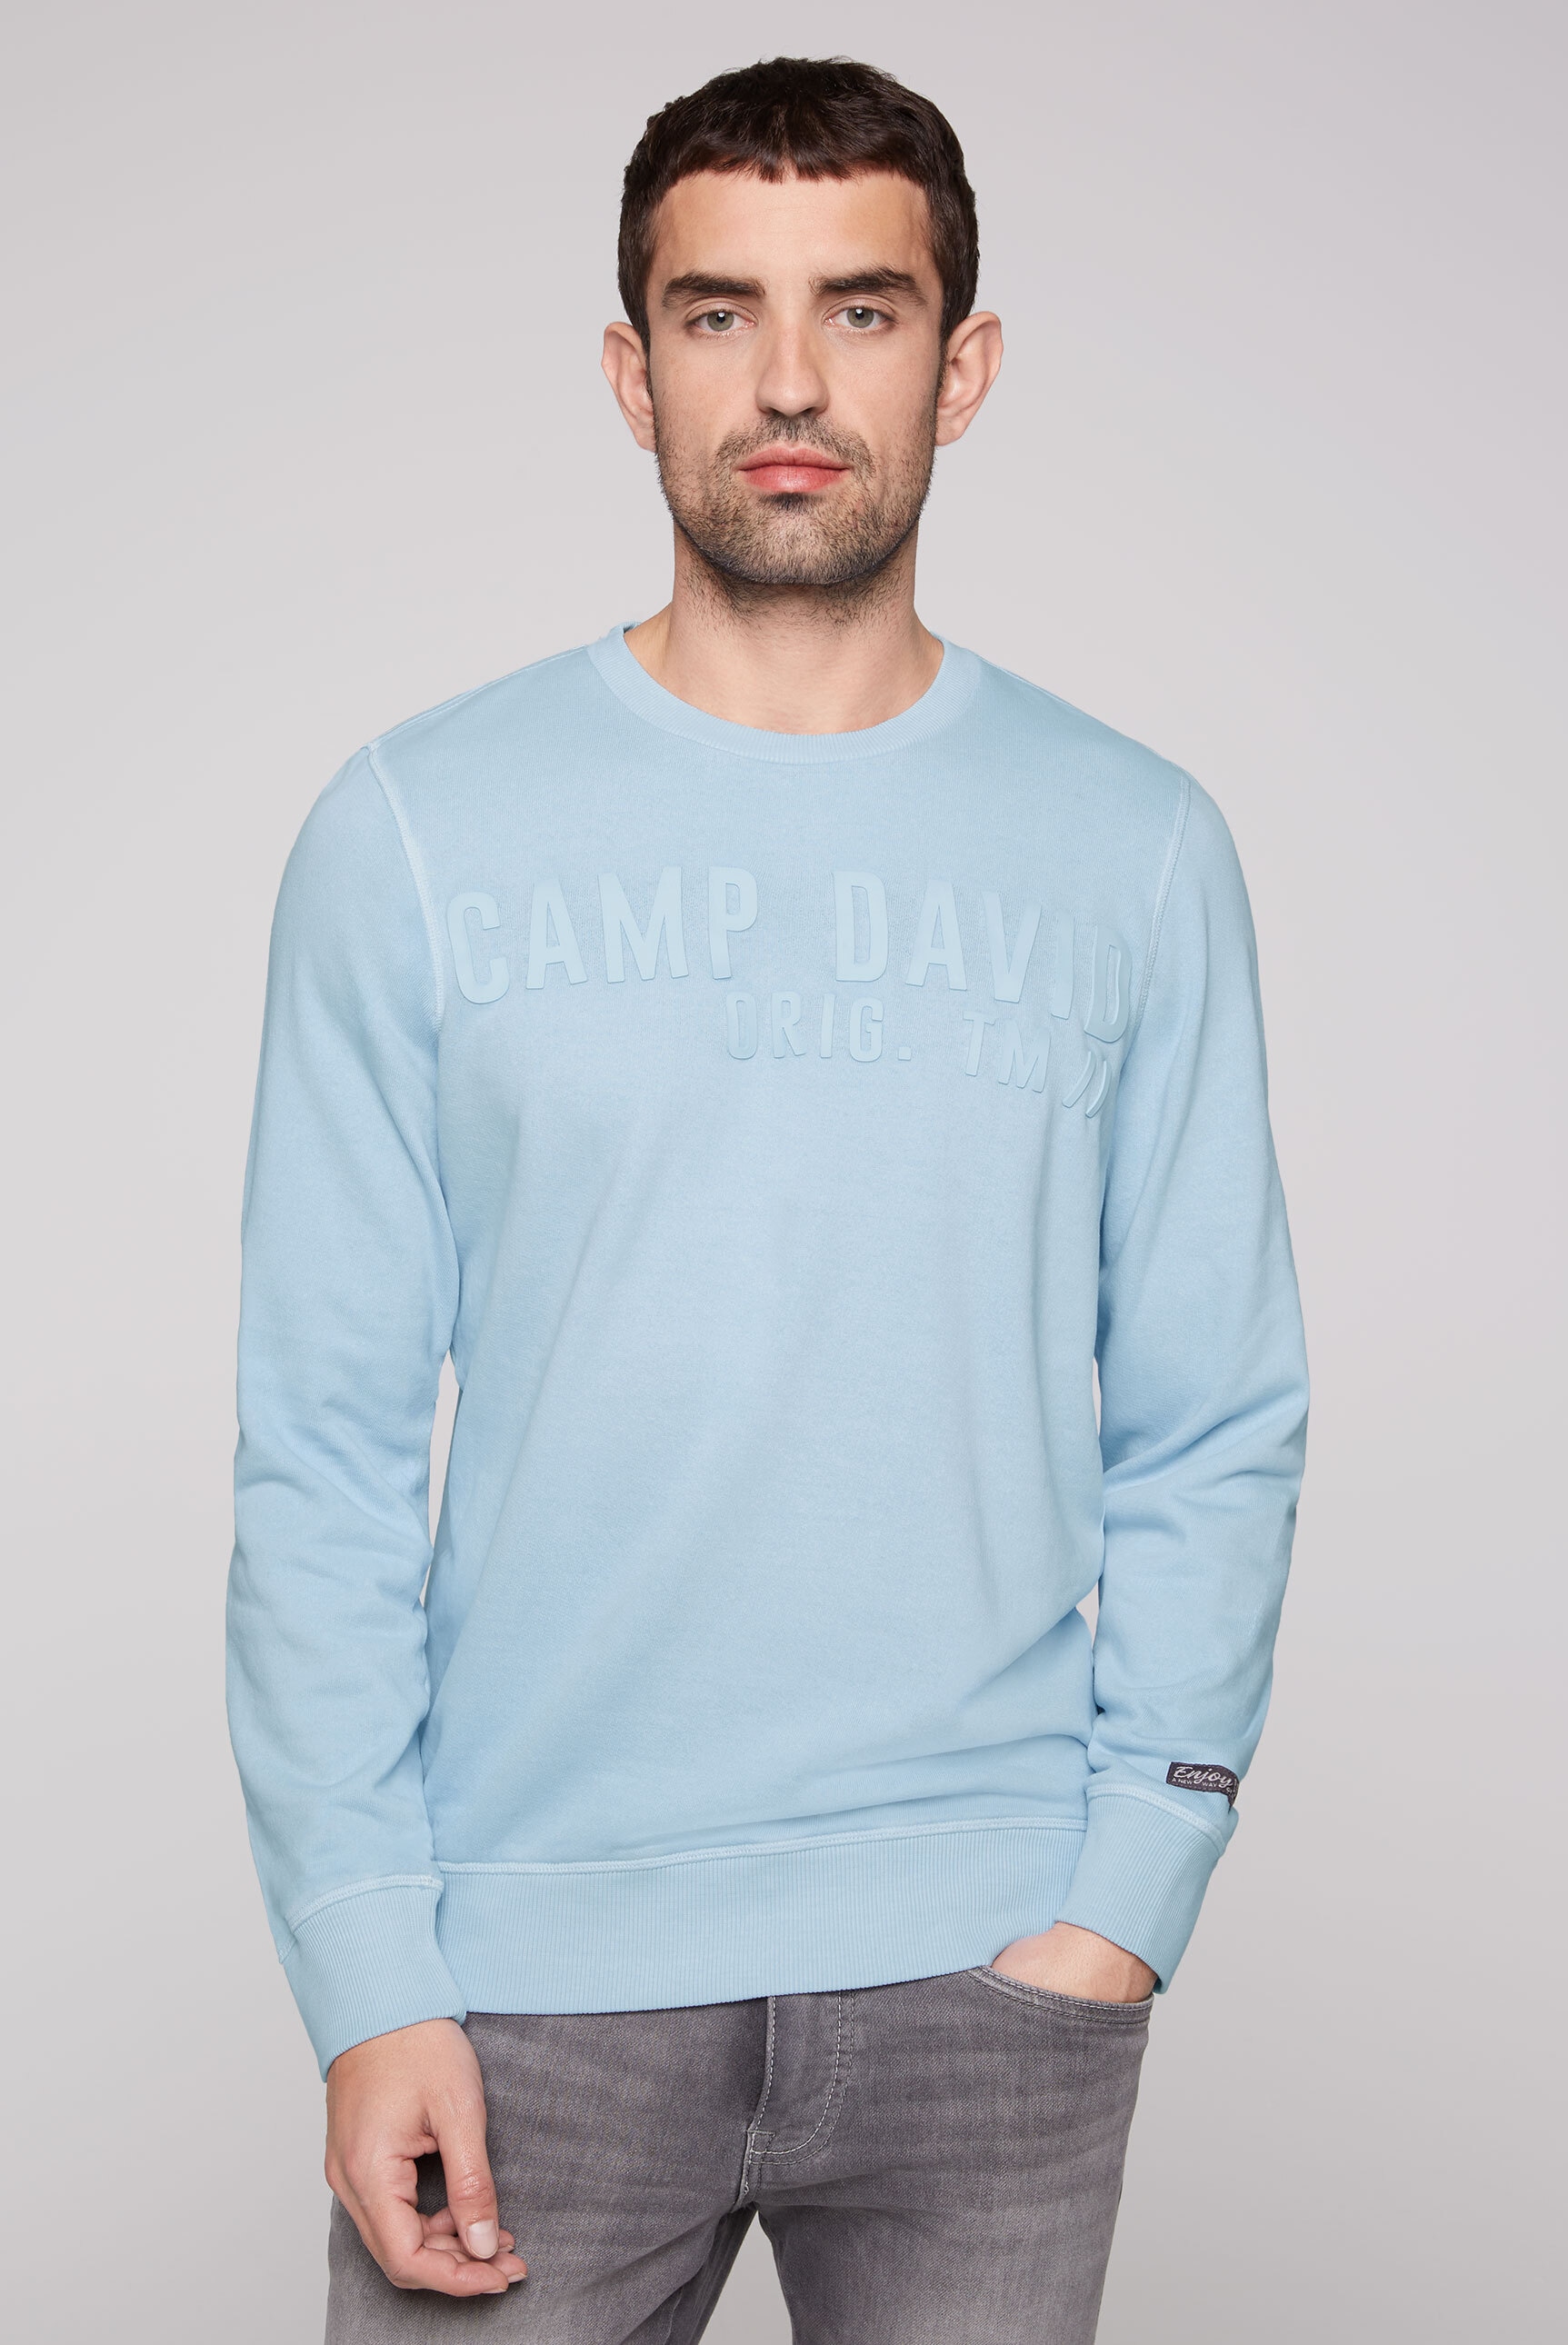 CAMP DAVID Sweater, aus Baumwolle